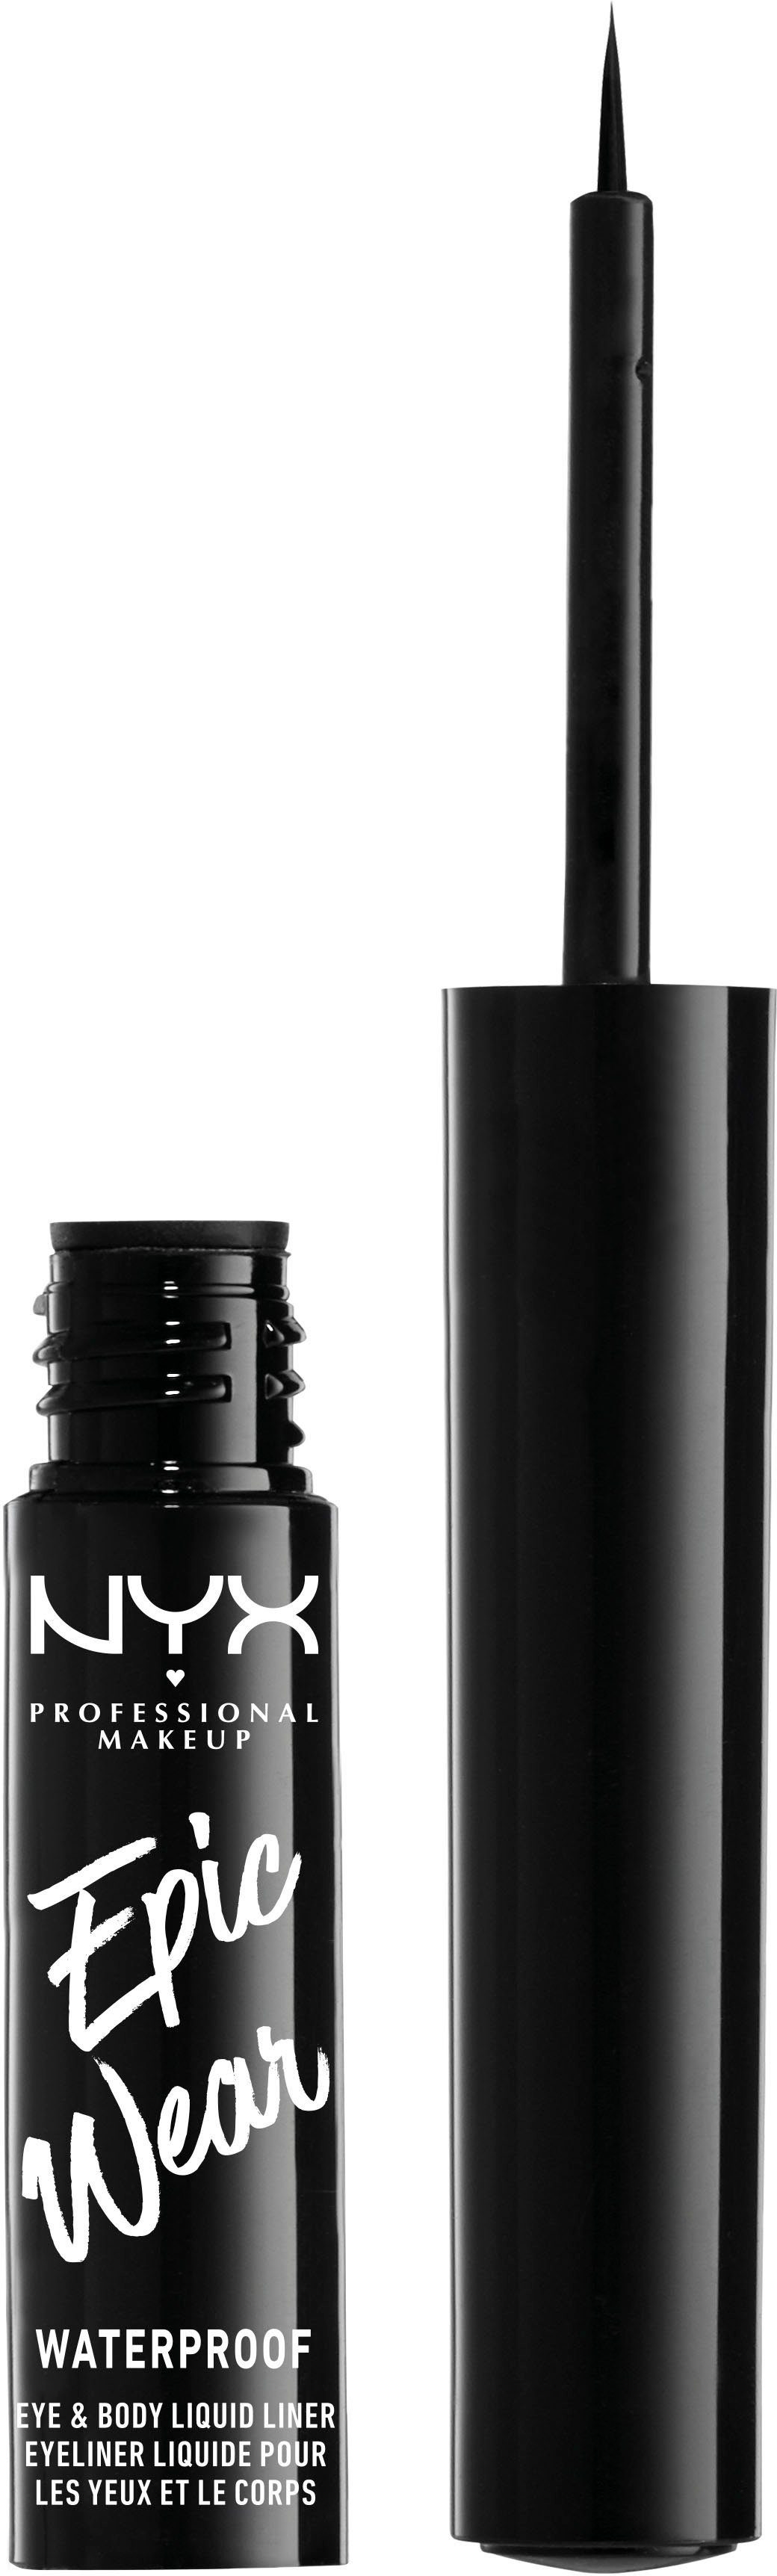 Black Wear Waterproof Professional Liner, Liquid NYX Eyeliner 01 Epic Makeup